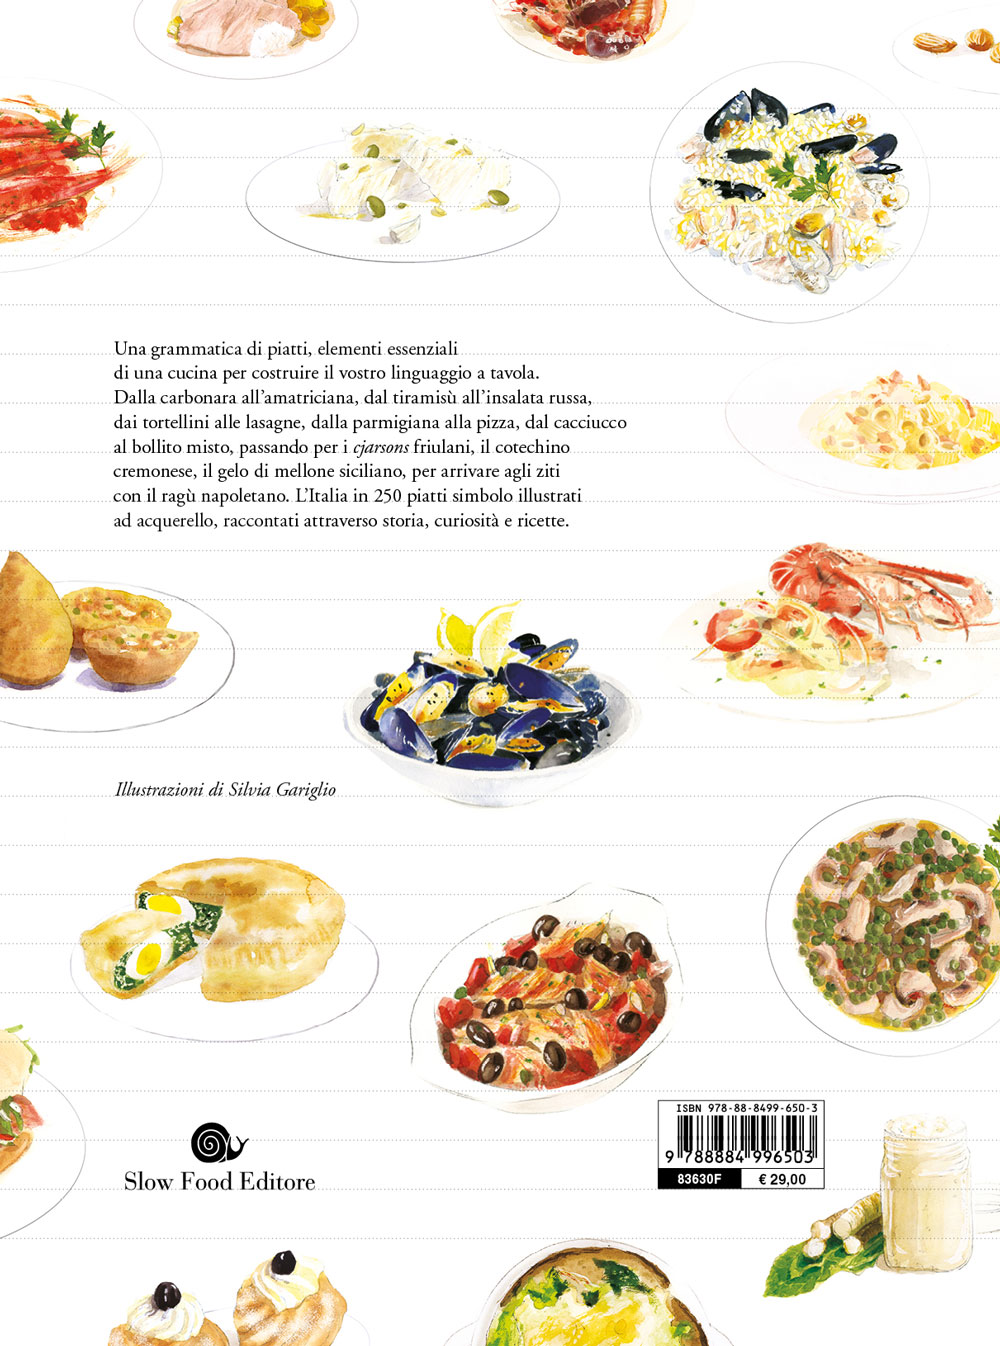 Grammatica illustrata della cucina italiana